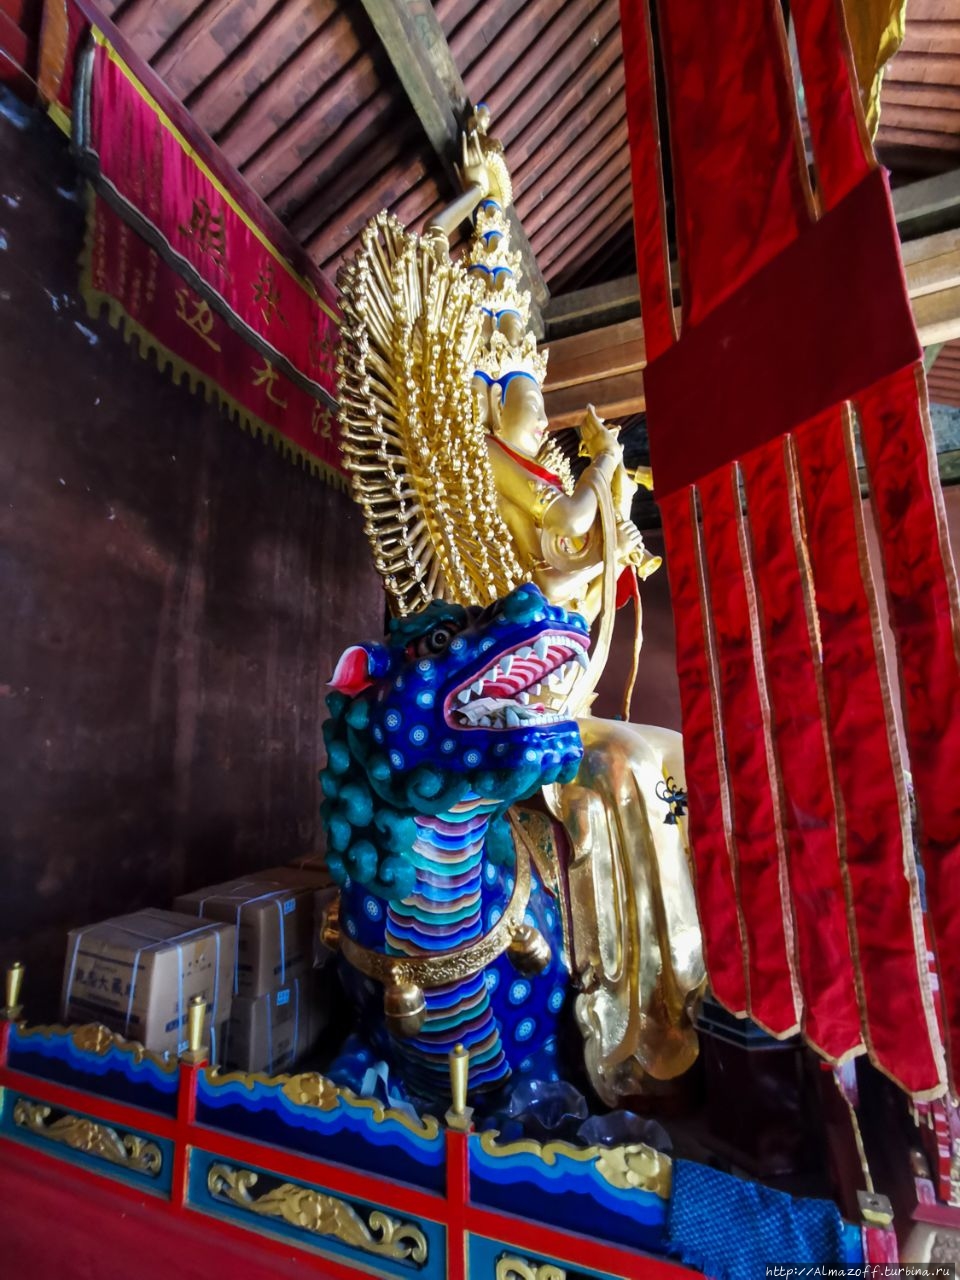 Храм Ясного Понимания Священная Гора Утайшань, Китай